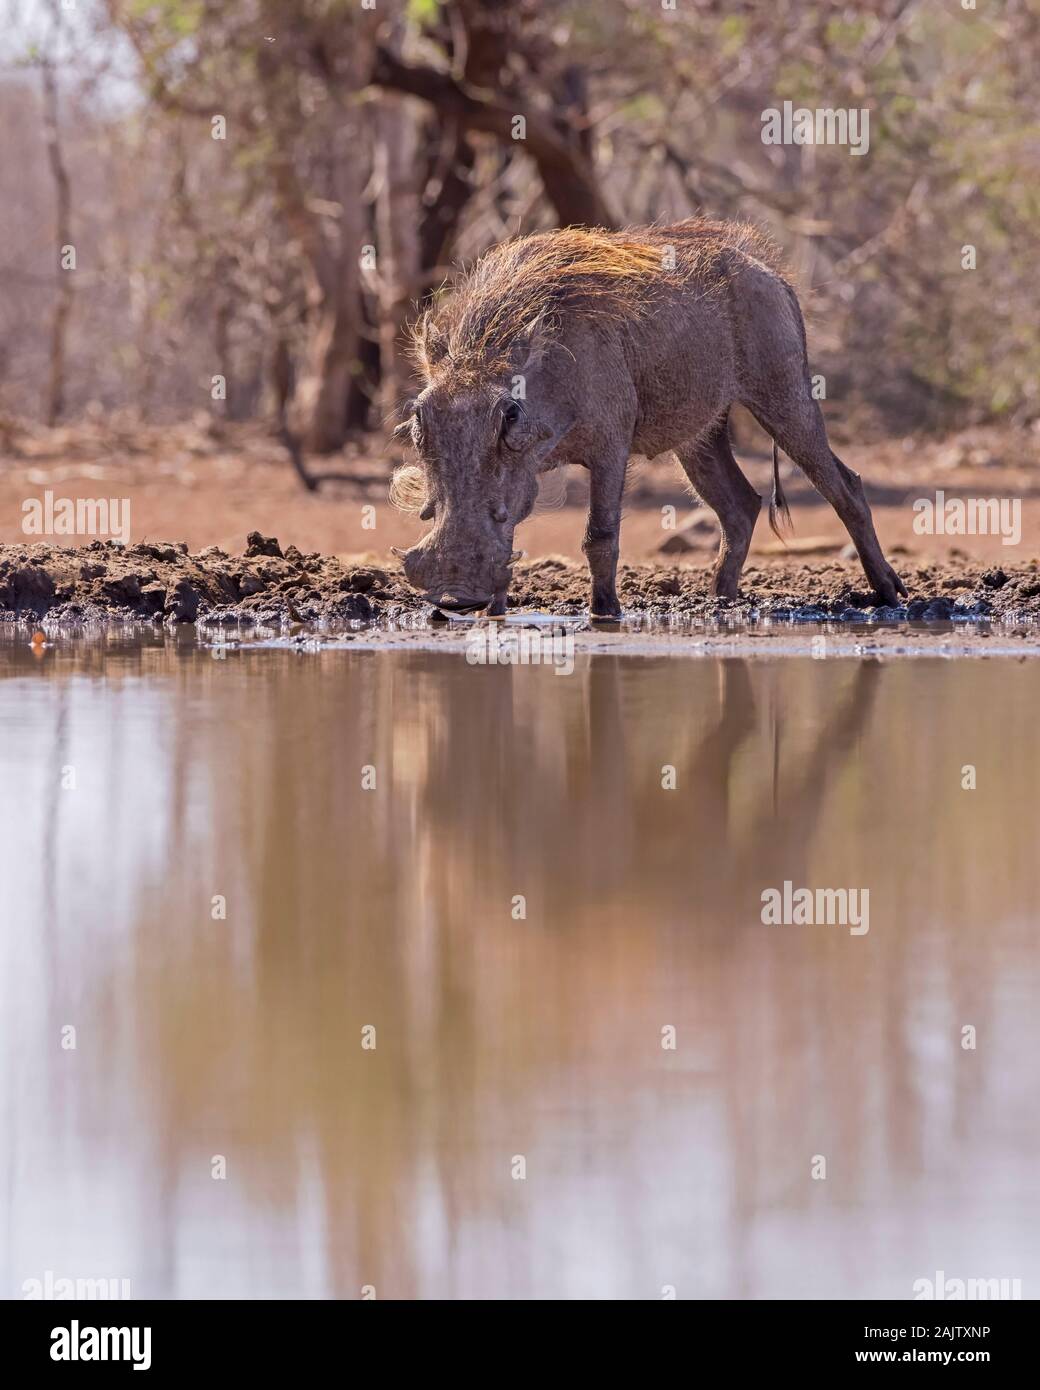 Warthog Drinking from Muddy Waterhole in Botswana, Africa Stock Photo